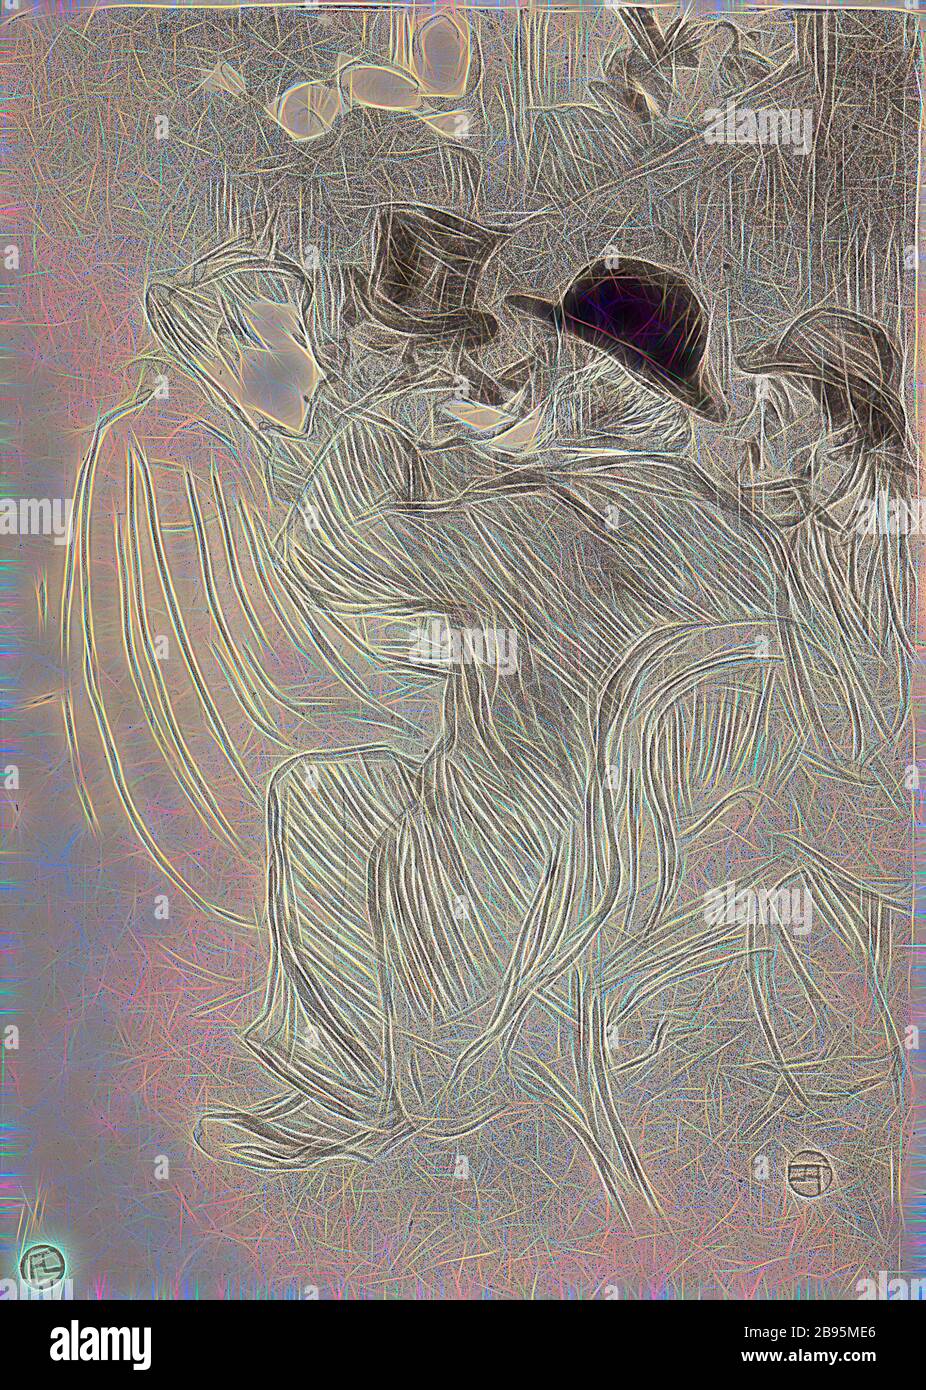 Au Moulin Rouge : un peu désagréable ! Un Vrai impoli! (Au Moulin Rouge - UN impoli! A True rude!), Henri de Toulouse-Lautrec (français, 1864-1901), Edward Ancourt, Imprimeur (français), 1893, encre sur papier, lithographie, 14-1/4 x 10 po. (image) 14-3/4 x 10-3/4 po. (Feuille), inscrite au crayon, L.L.: 71, estampillée en rouge, L.L.: HTL (Lugt 1338), réinventée par Gibon, conception de lumière chaude et gaie rayonnant de lumière et de radiance. L'art classique réinventé avec une touche moderne. Photographie inspirée par le futurisme, embrassant l'énergie dynamique de la technologie moderne, le mouvement, la vitesse et révolutionnez la culture. Banque D'Images